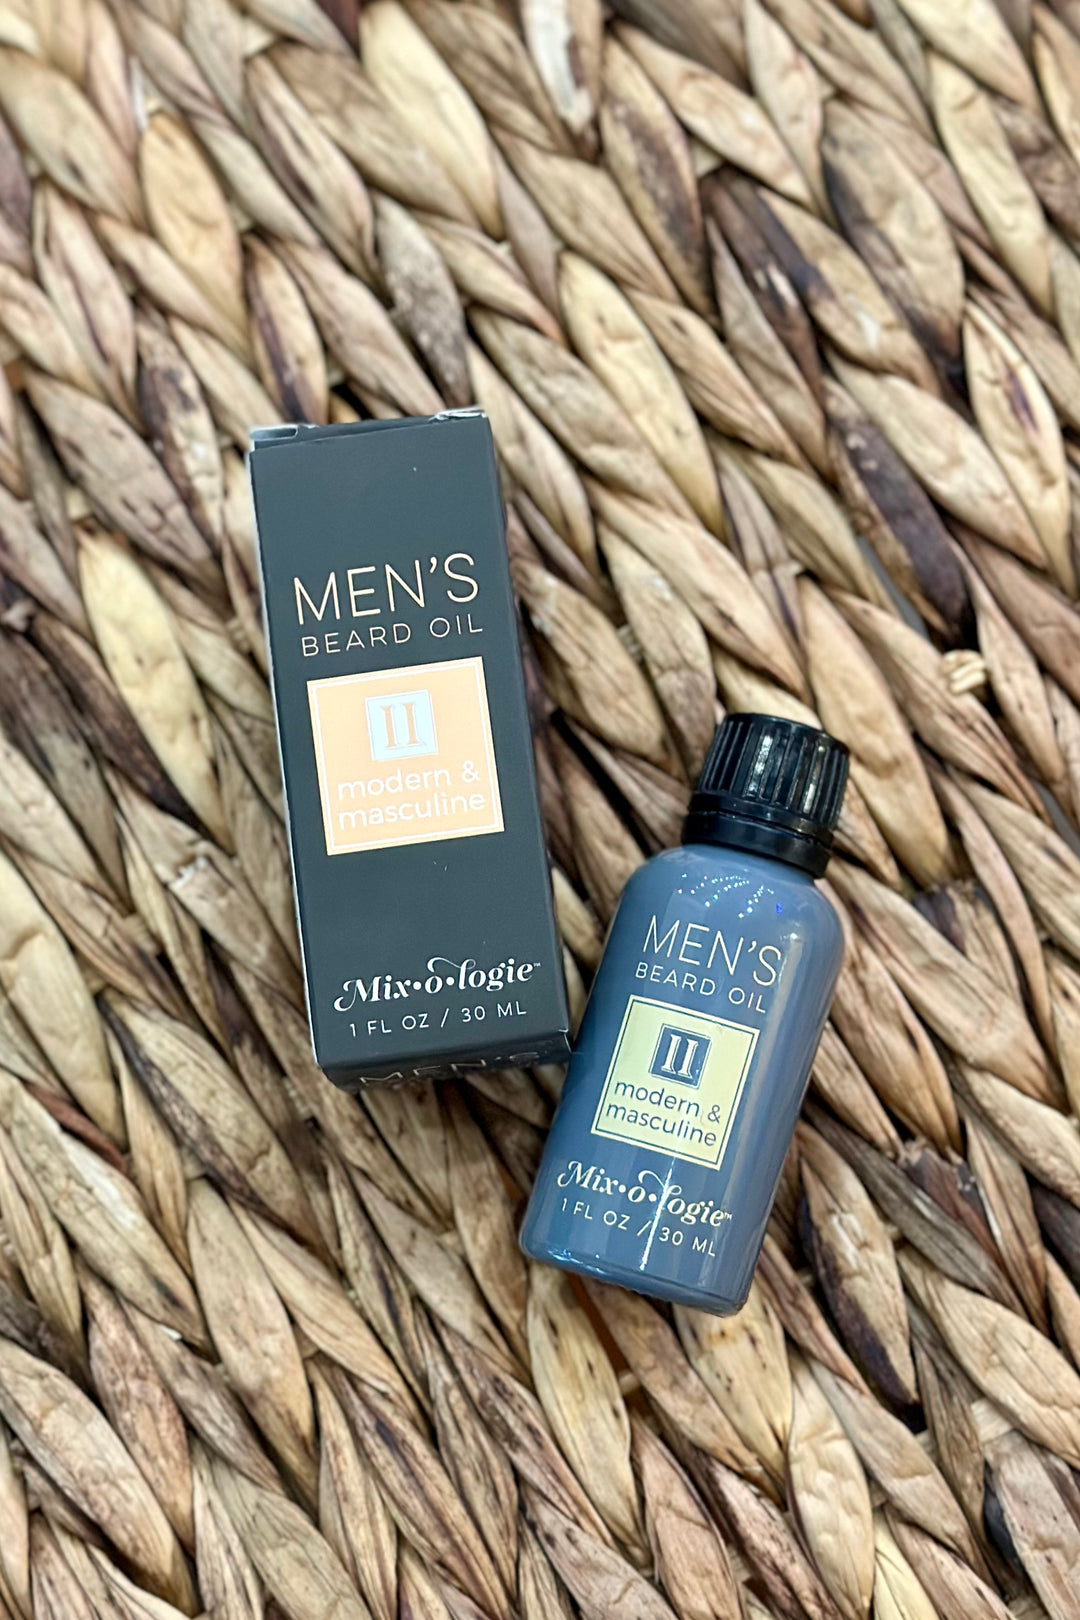 Men's Beard Oil by Mixologie (II - Modern & Masculine)